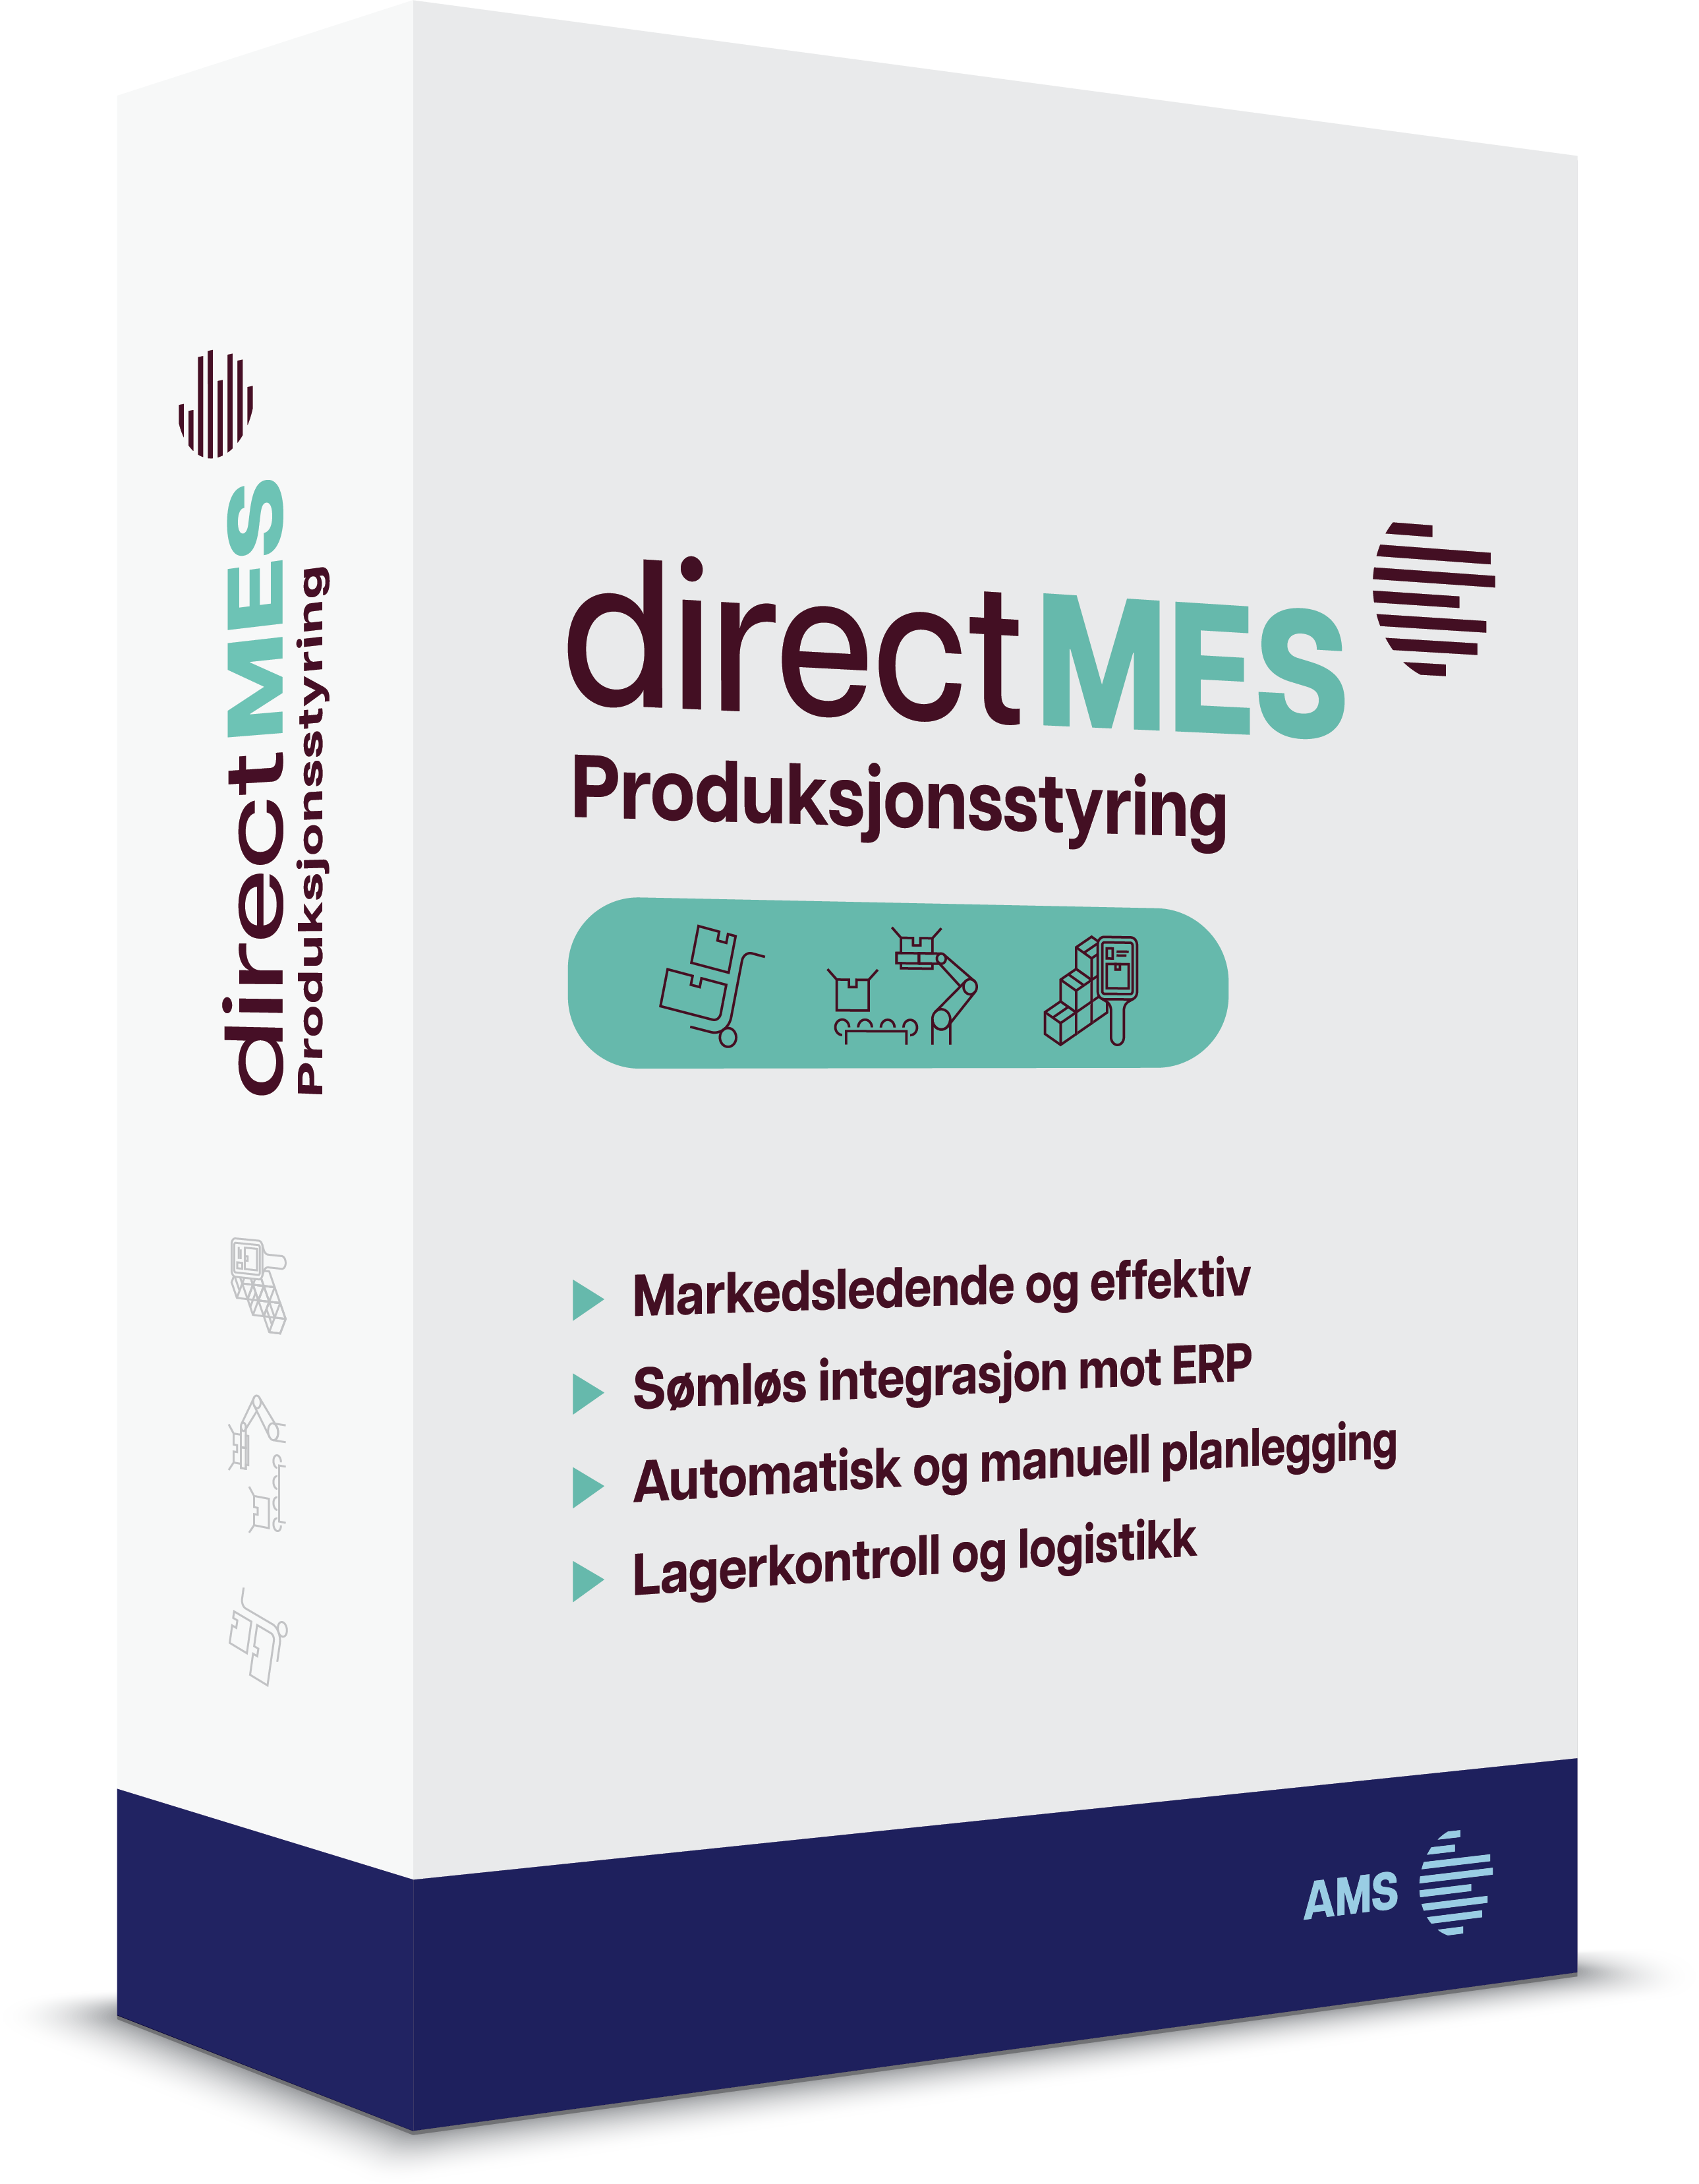 directMES produksjonsstyring